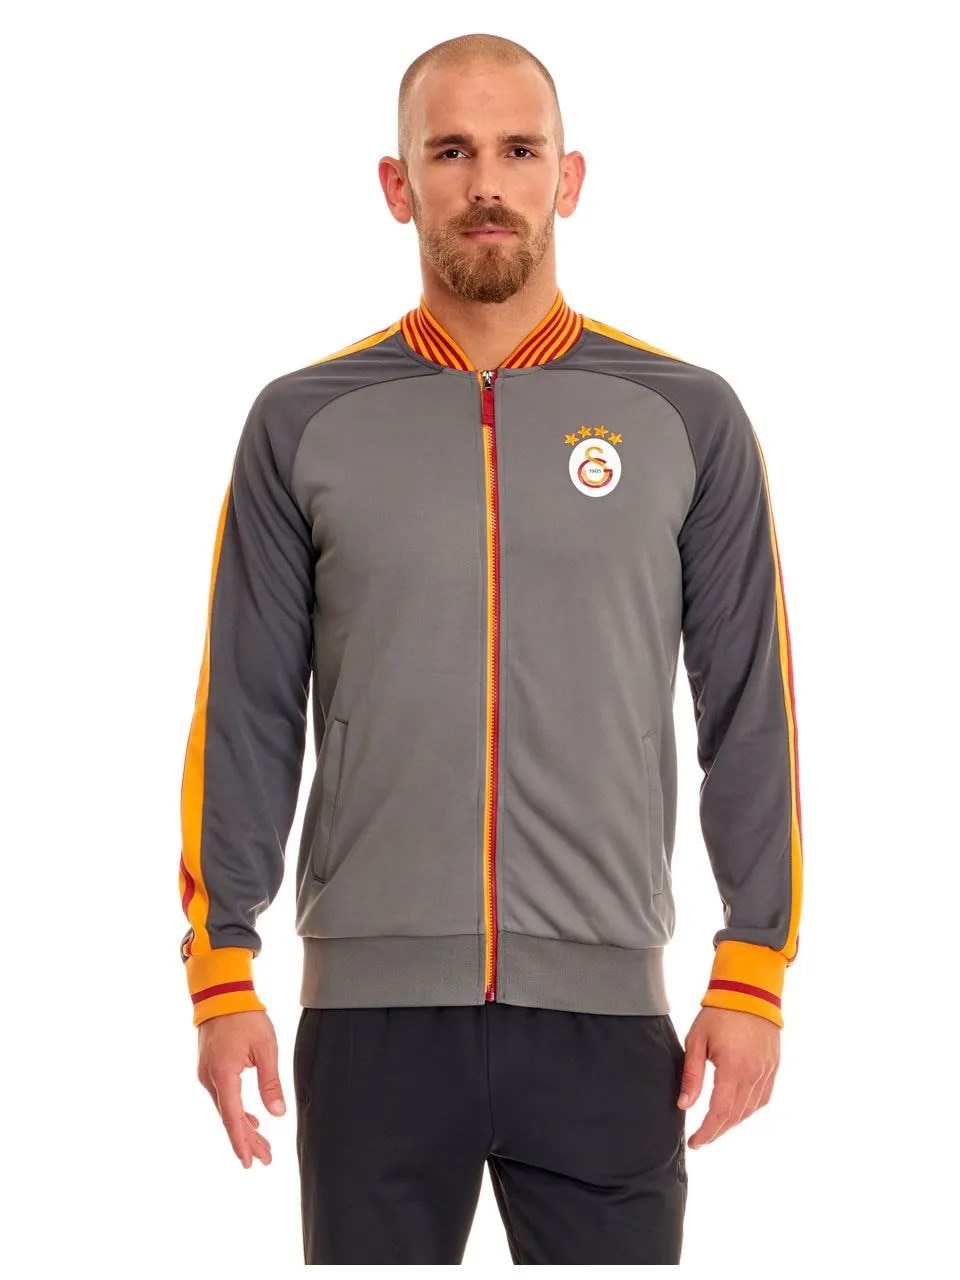 Galatasaray Erkek Giyim Aksesuar Modelleri Ve Fiyatlari N11 Com